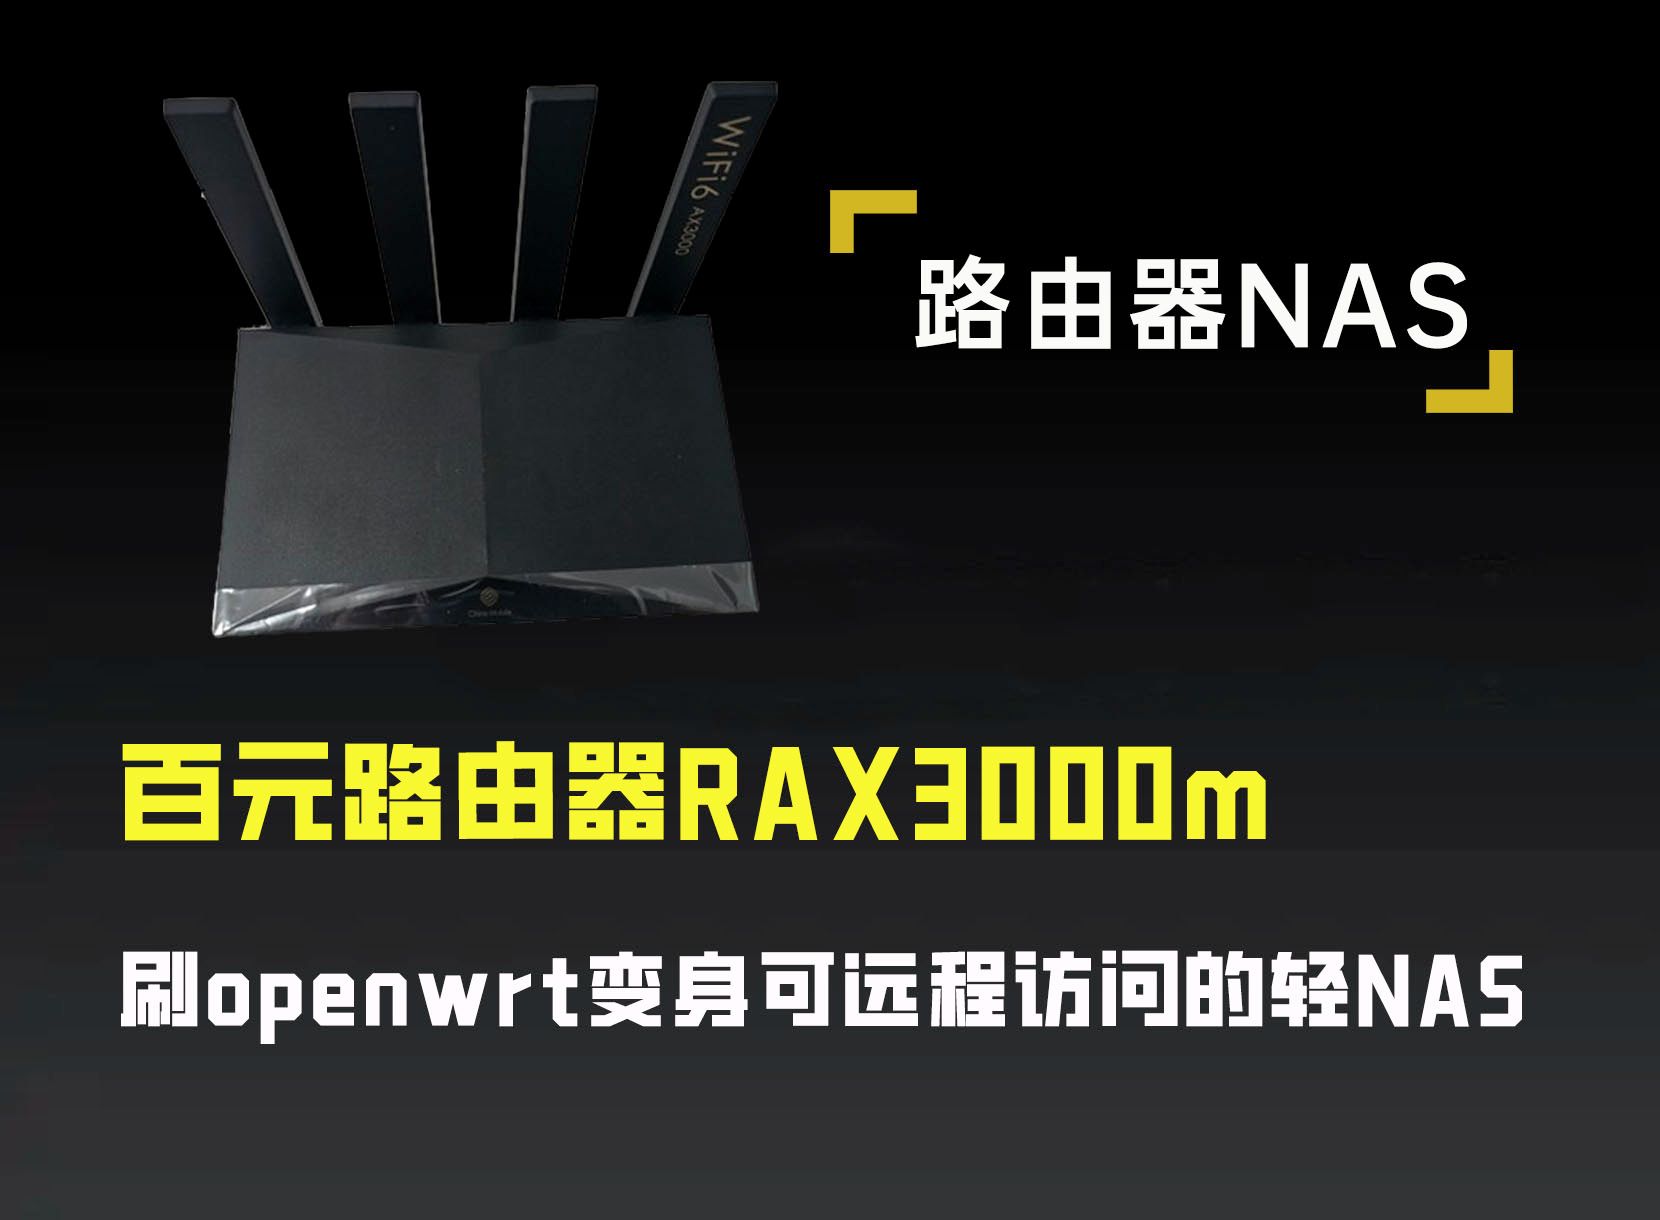 百元路由器RAX3000m,刷openwrt变身可远程访问的轻NAS